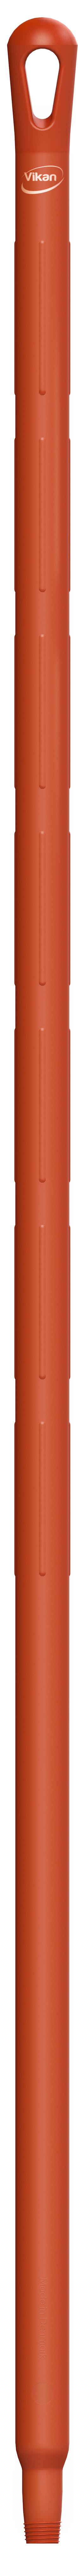 Vikan Ultra Hygiene 29624 rood kunststof steel 150cm